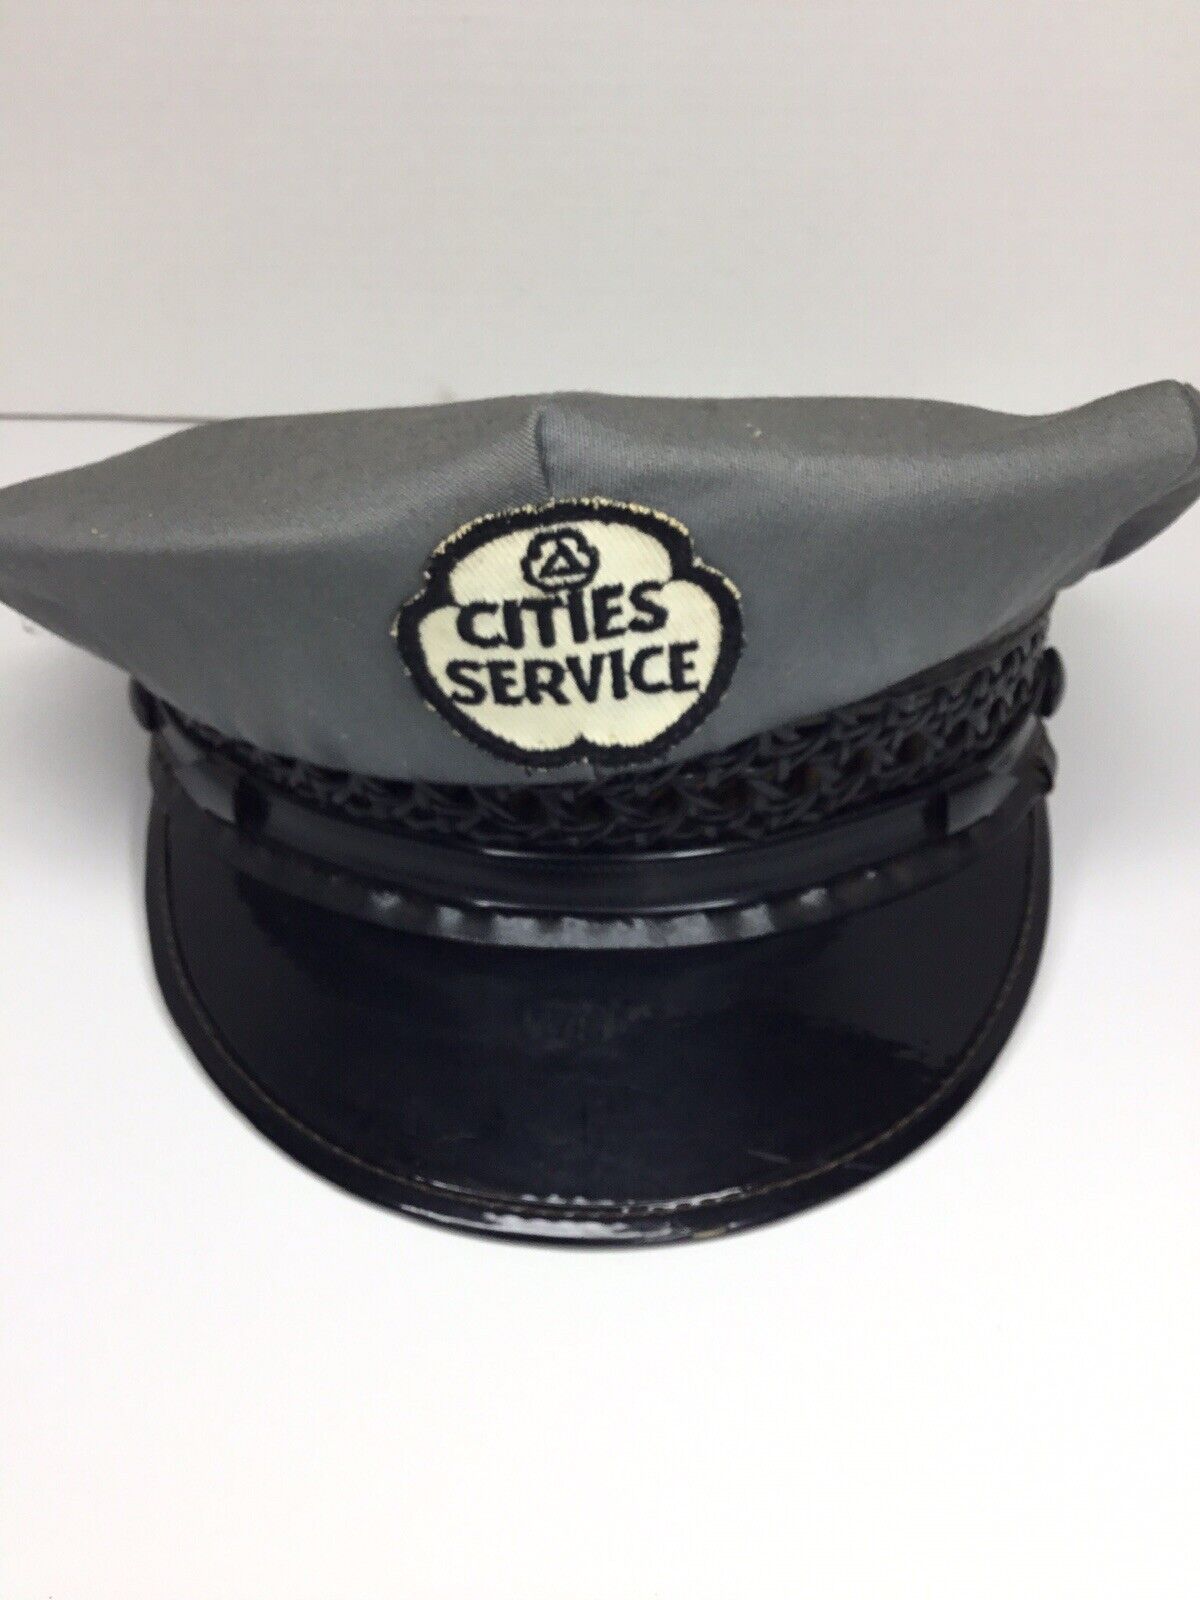 Vintage Original “CITIES SERVICE” Gas Service Station Attendant Hat Uniform Cap